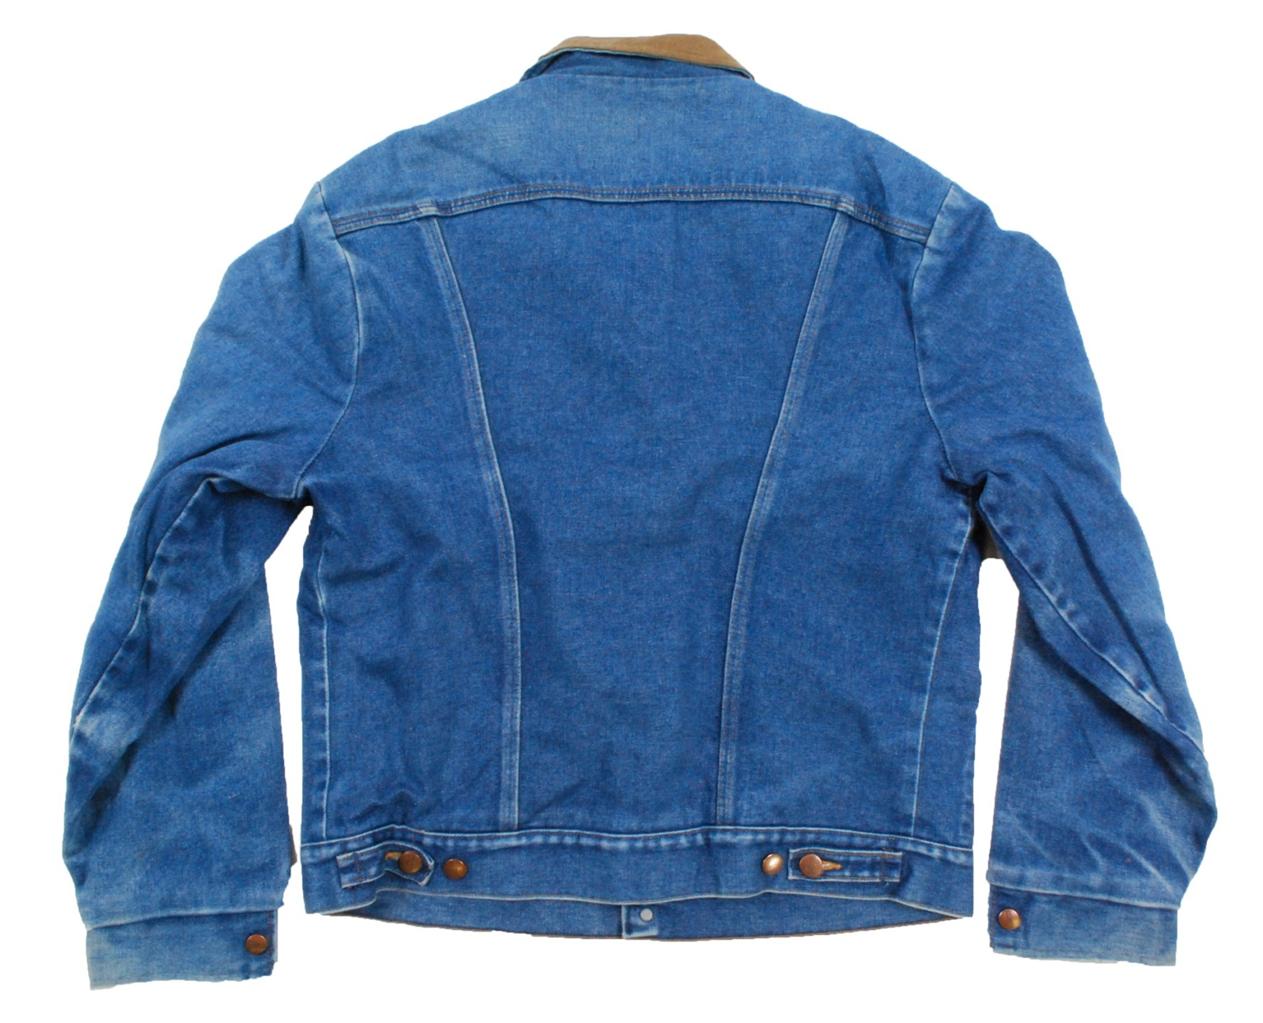 Vintage Winter blanket lined Wrangler denim jean jacket - Large L | eBay